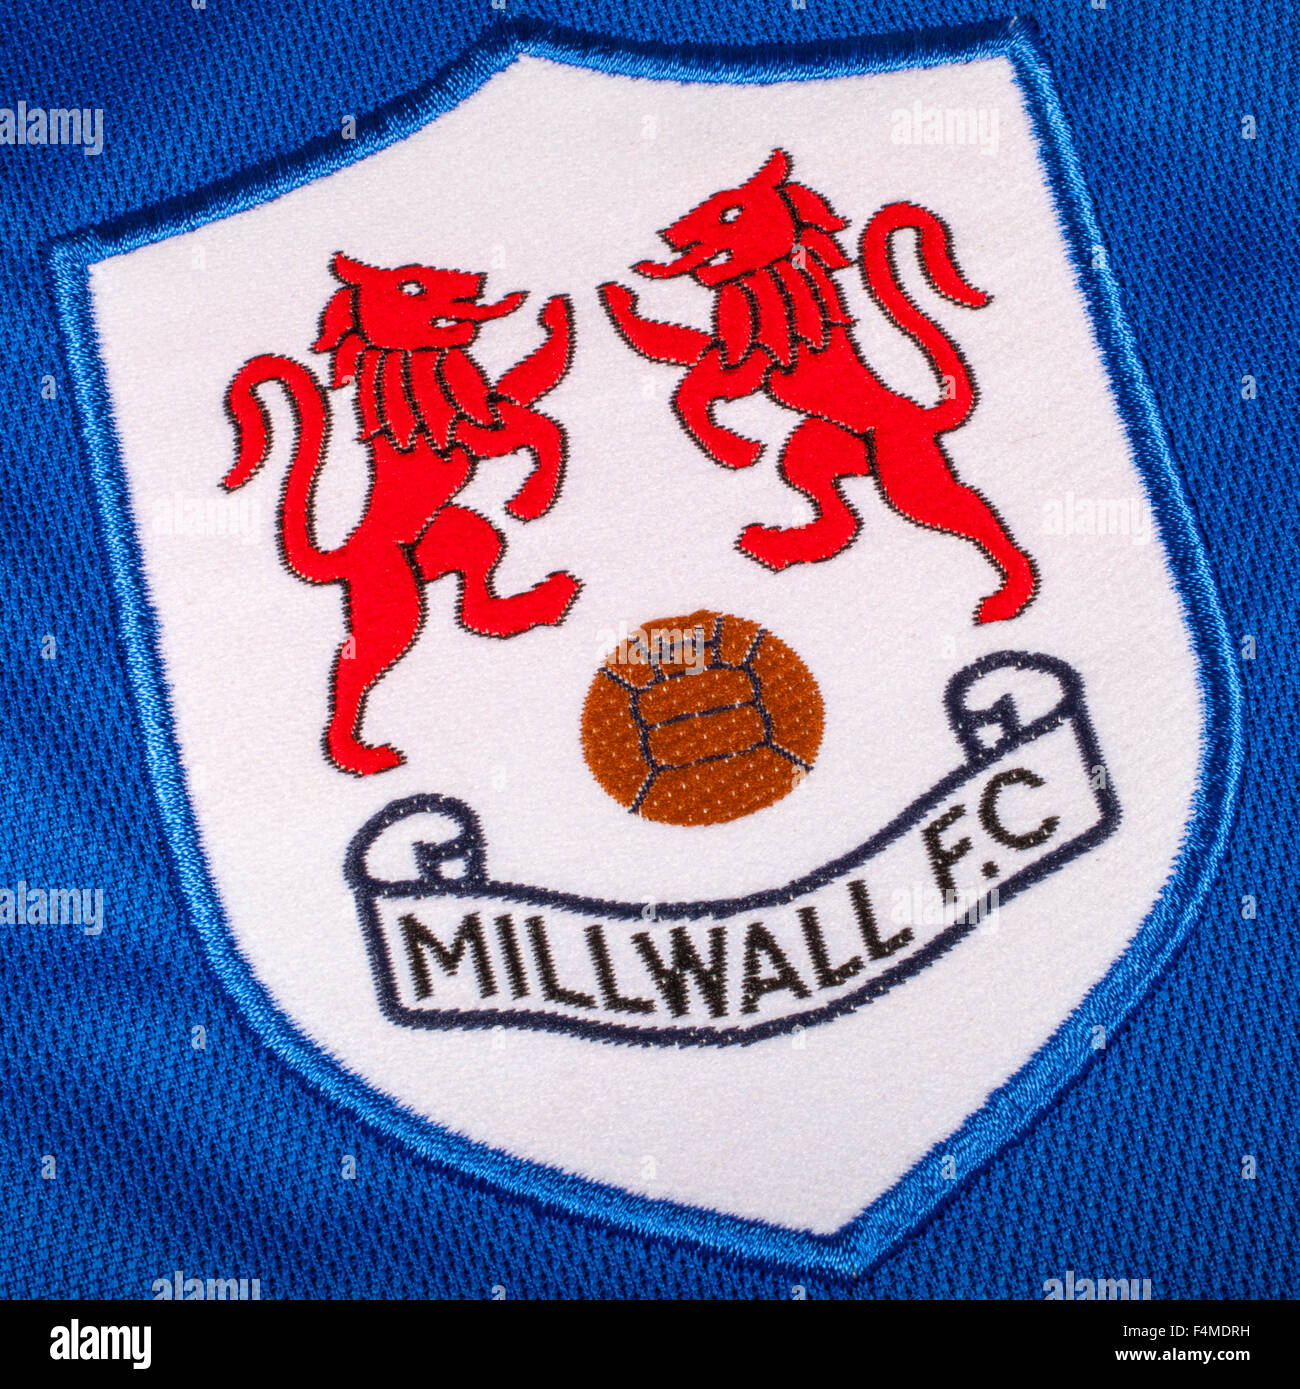 LONDON, UK - 19. Oktober 2015: Das Vereinswappen auf Millwall FC Shirt, am 19. Oktober 2015. Stockfoto